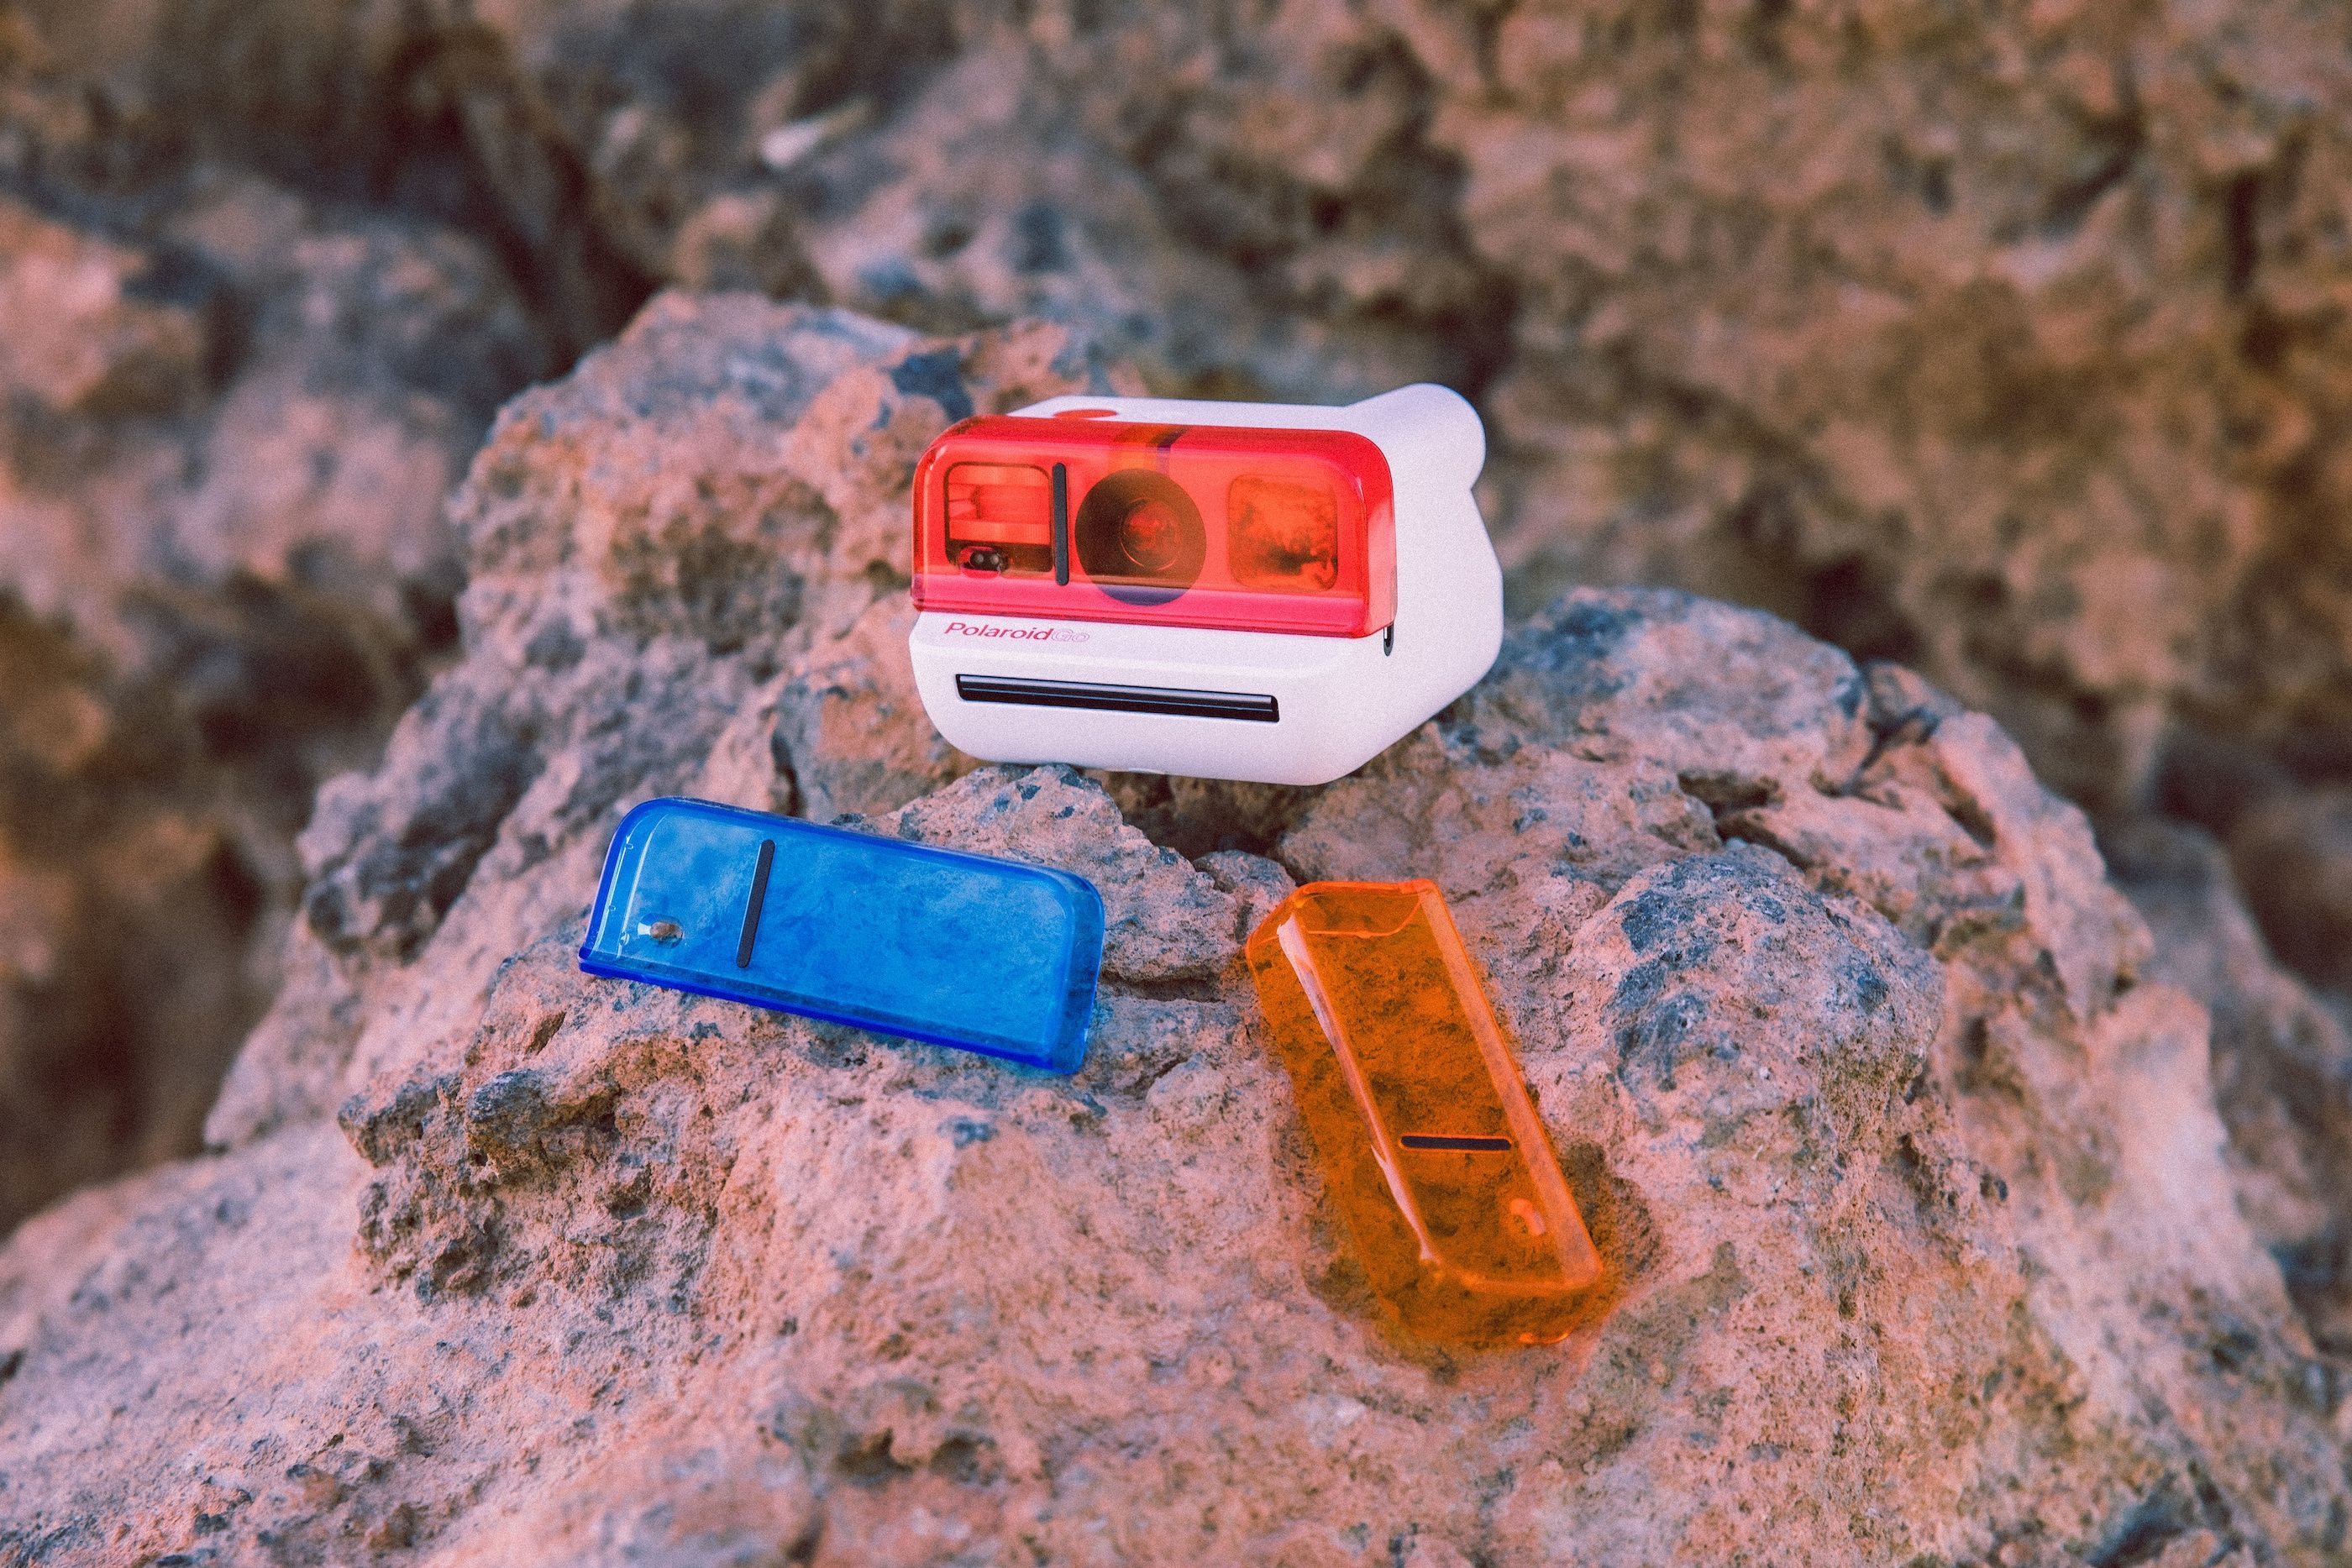 Polaroid Go ahora en dos nuevos colores y con accesorios sorprendentes